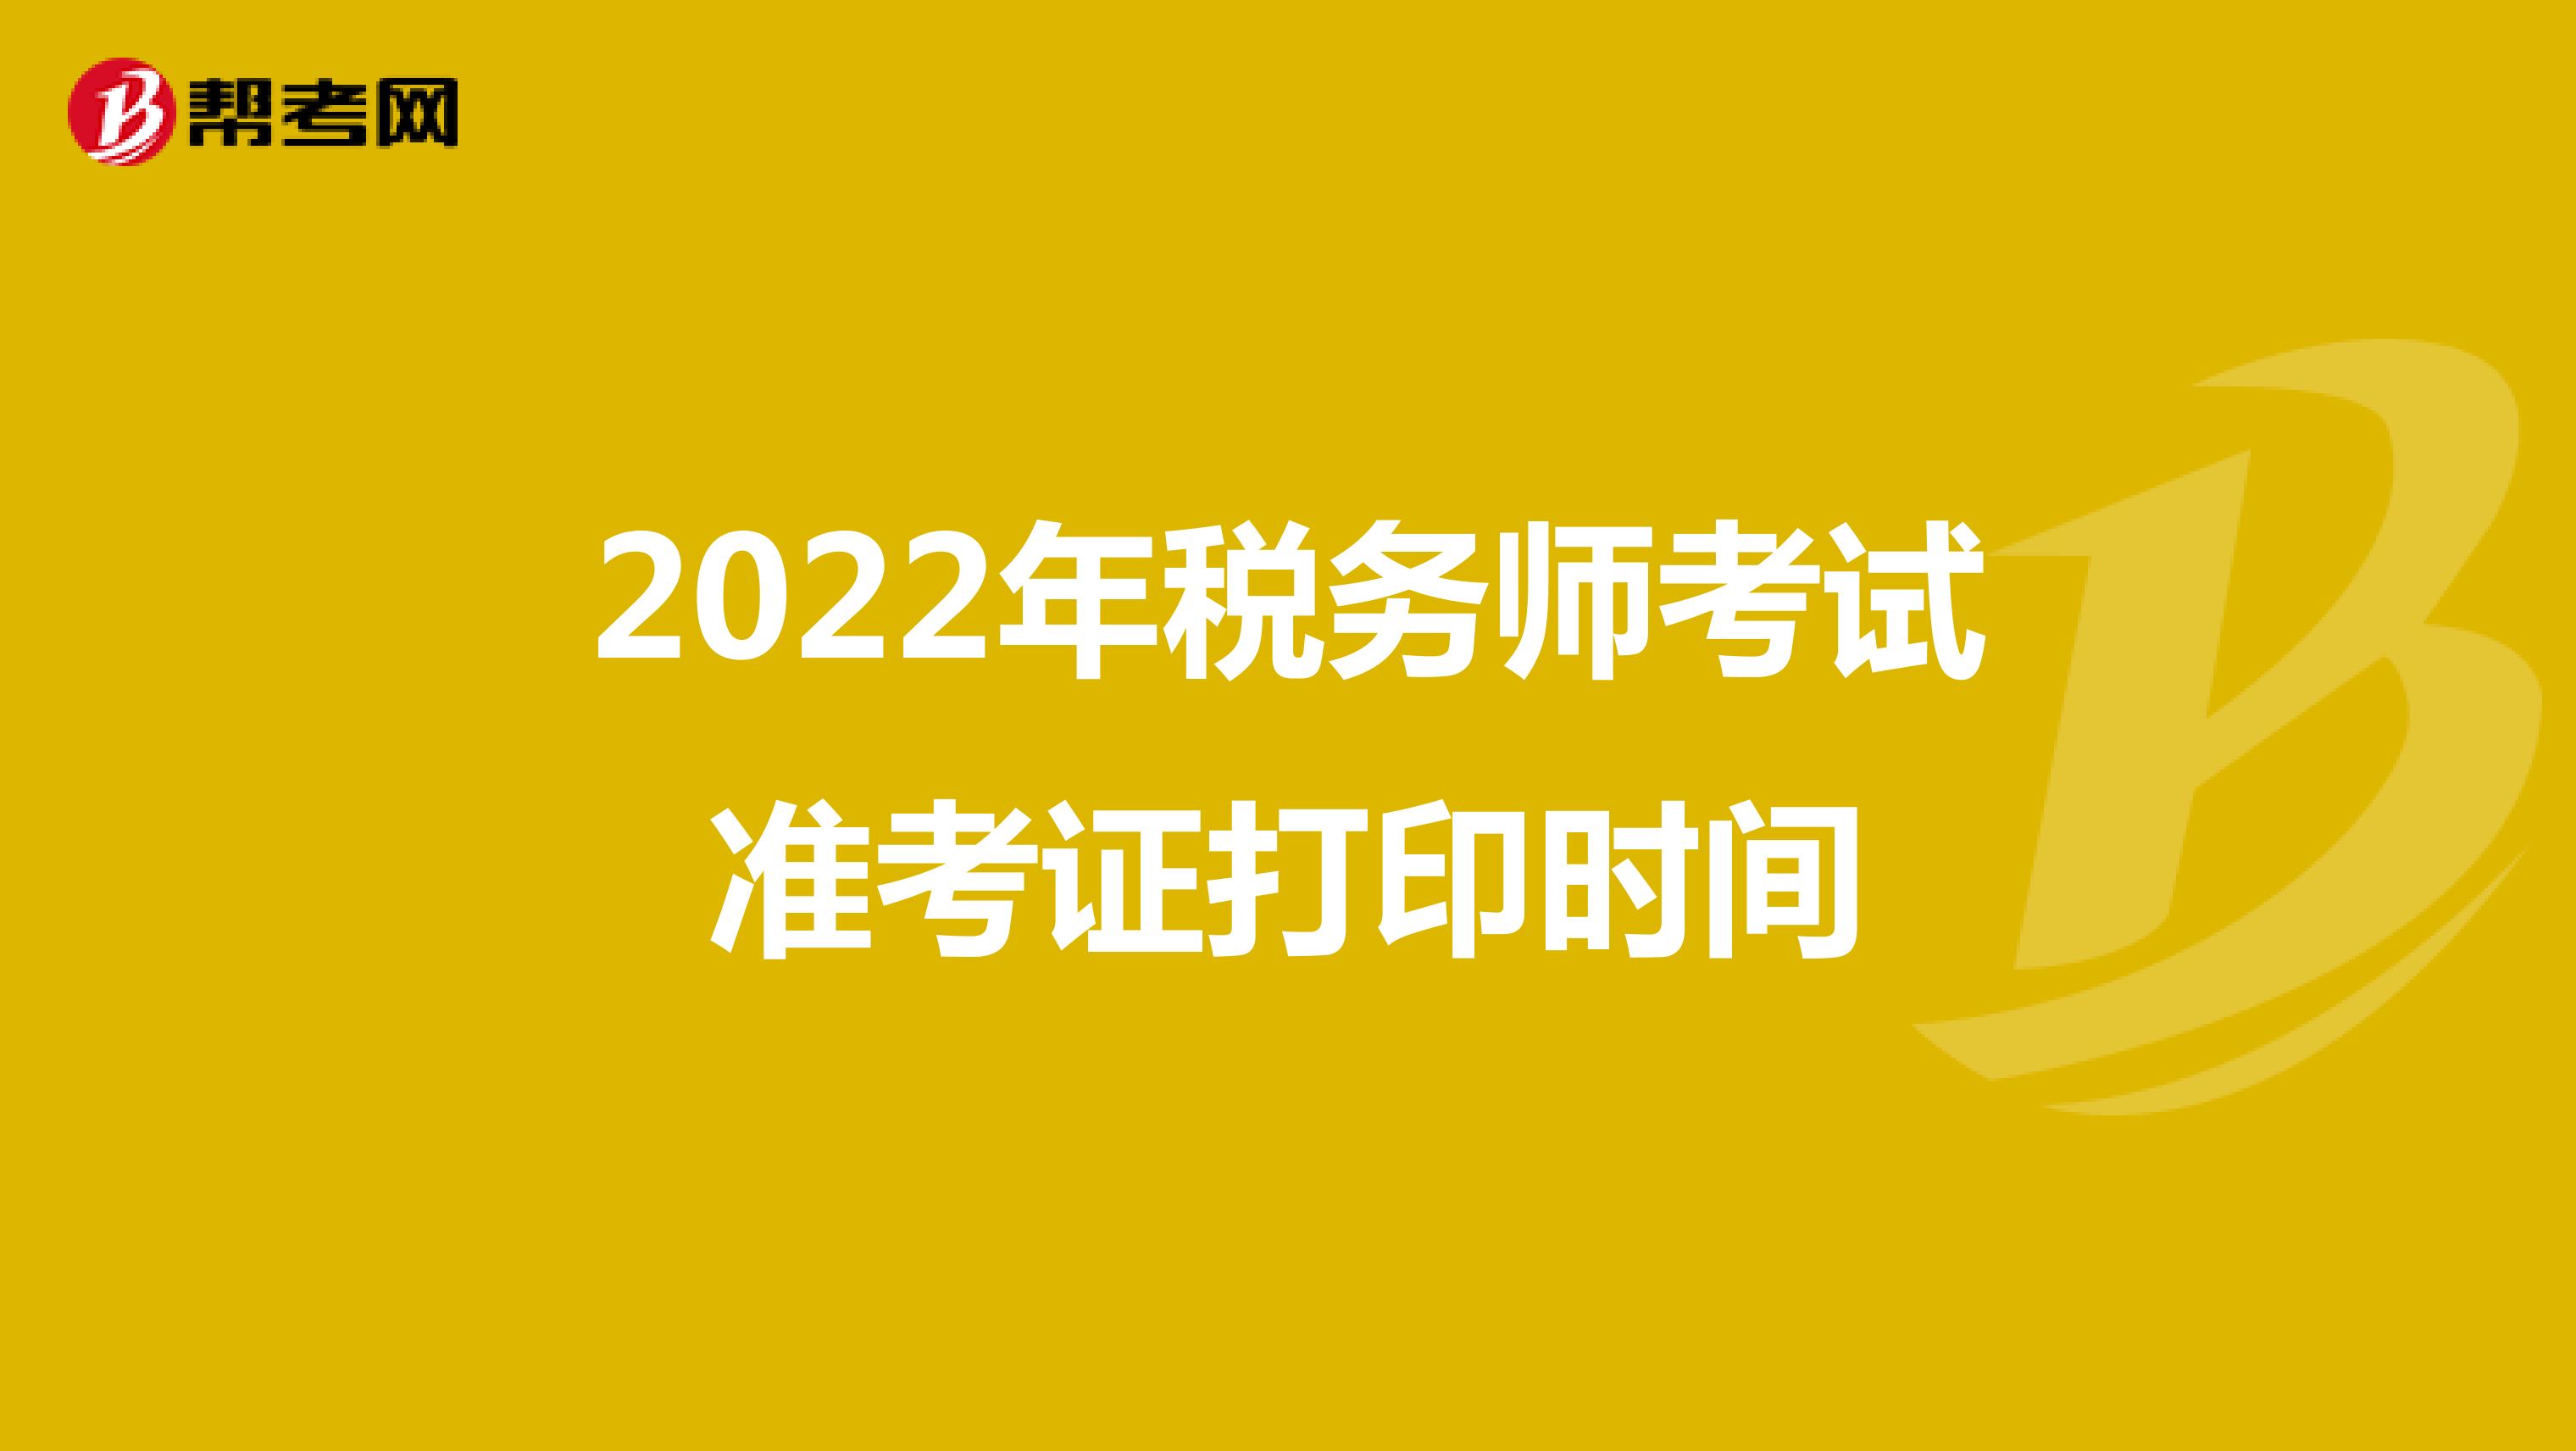 2022年税务师考试准考证打印时间